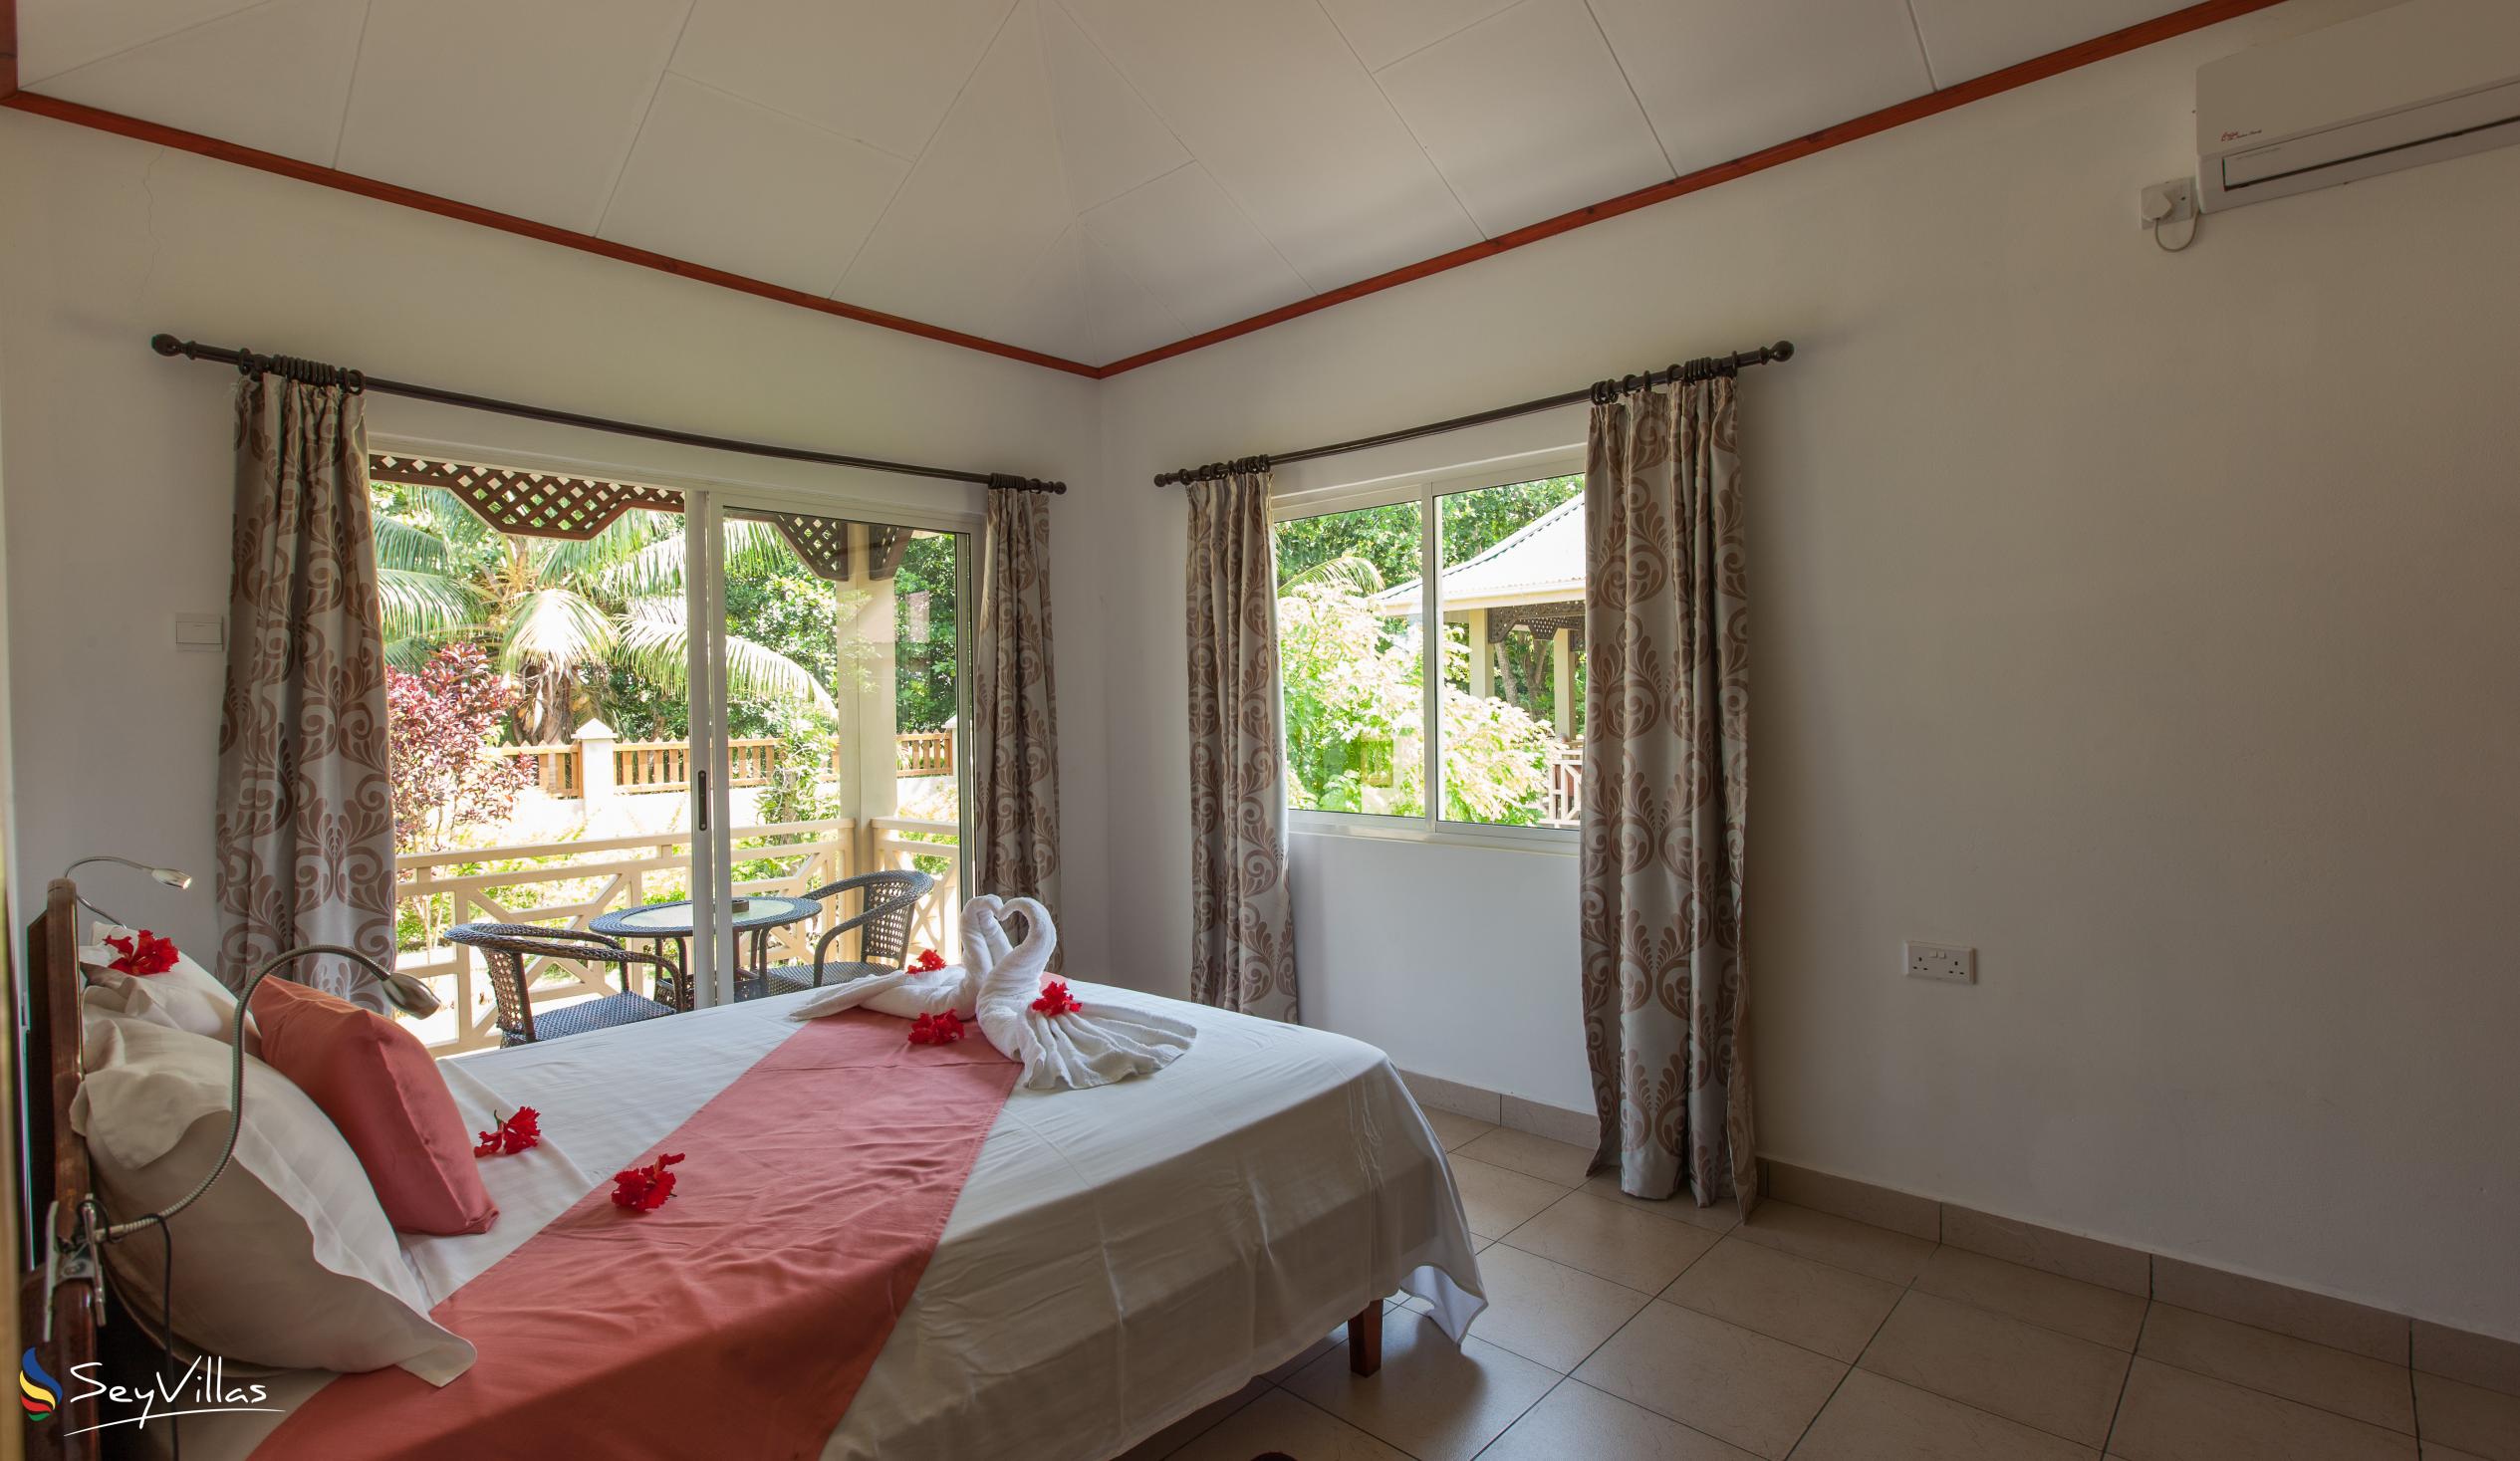 Foto 46: Hostellerie La Digue - Bungalow con 2 camere da letto - La Digue (Seychelles)